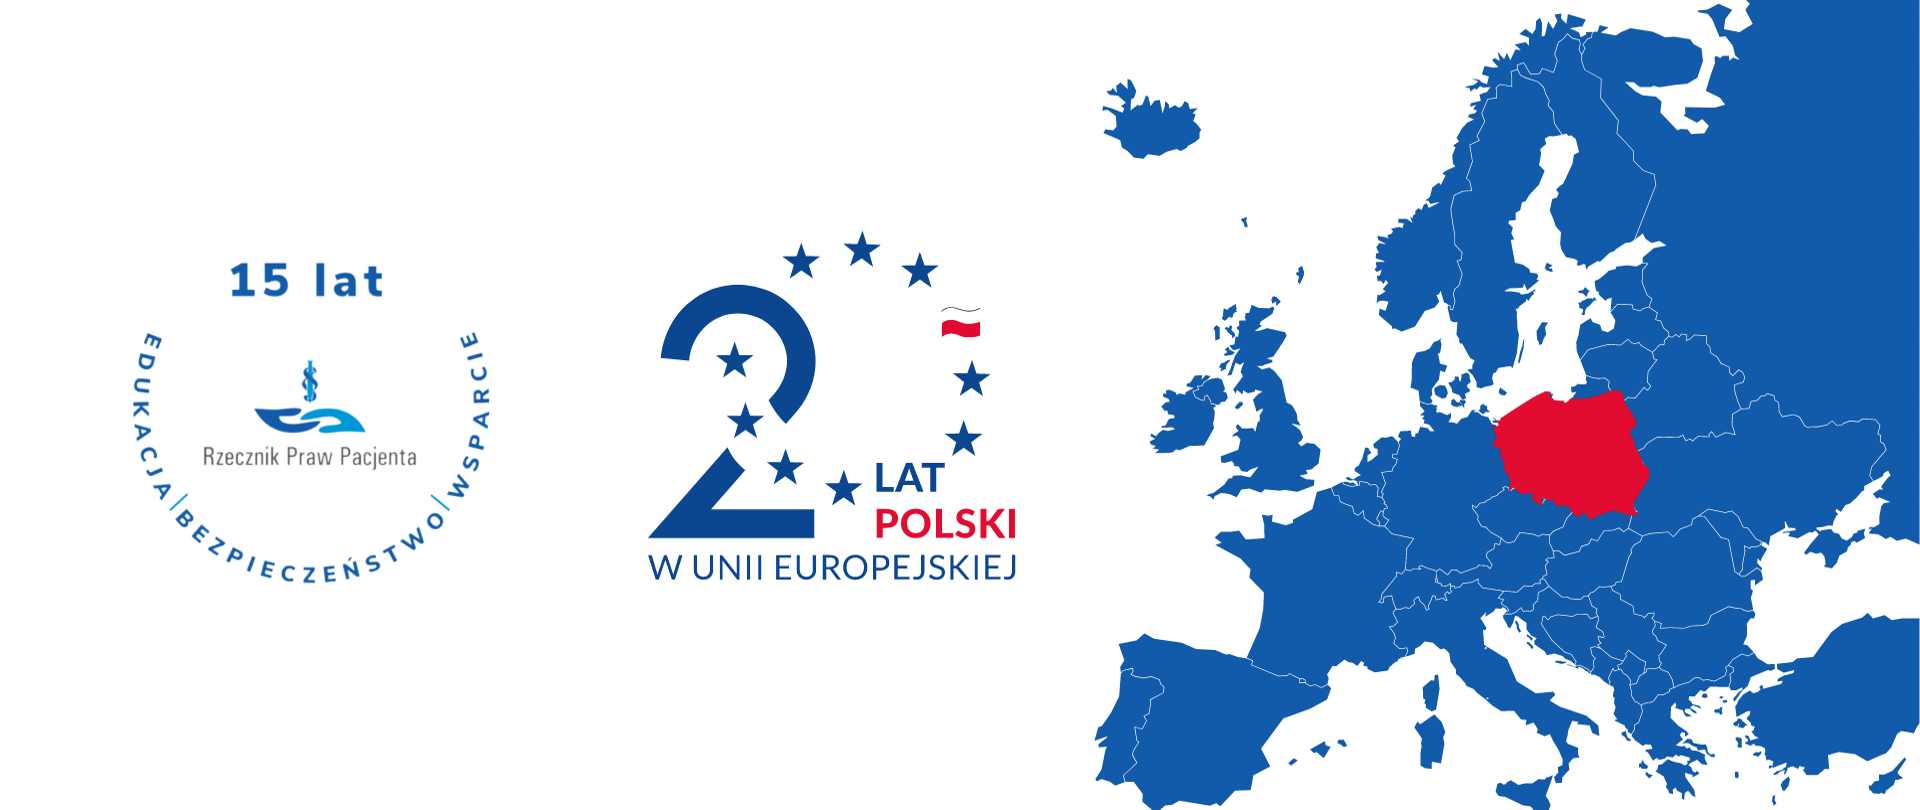 Grafika przedstawia mapę Europy oraz rocznicę przystąpienia Polski do UE